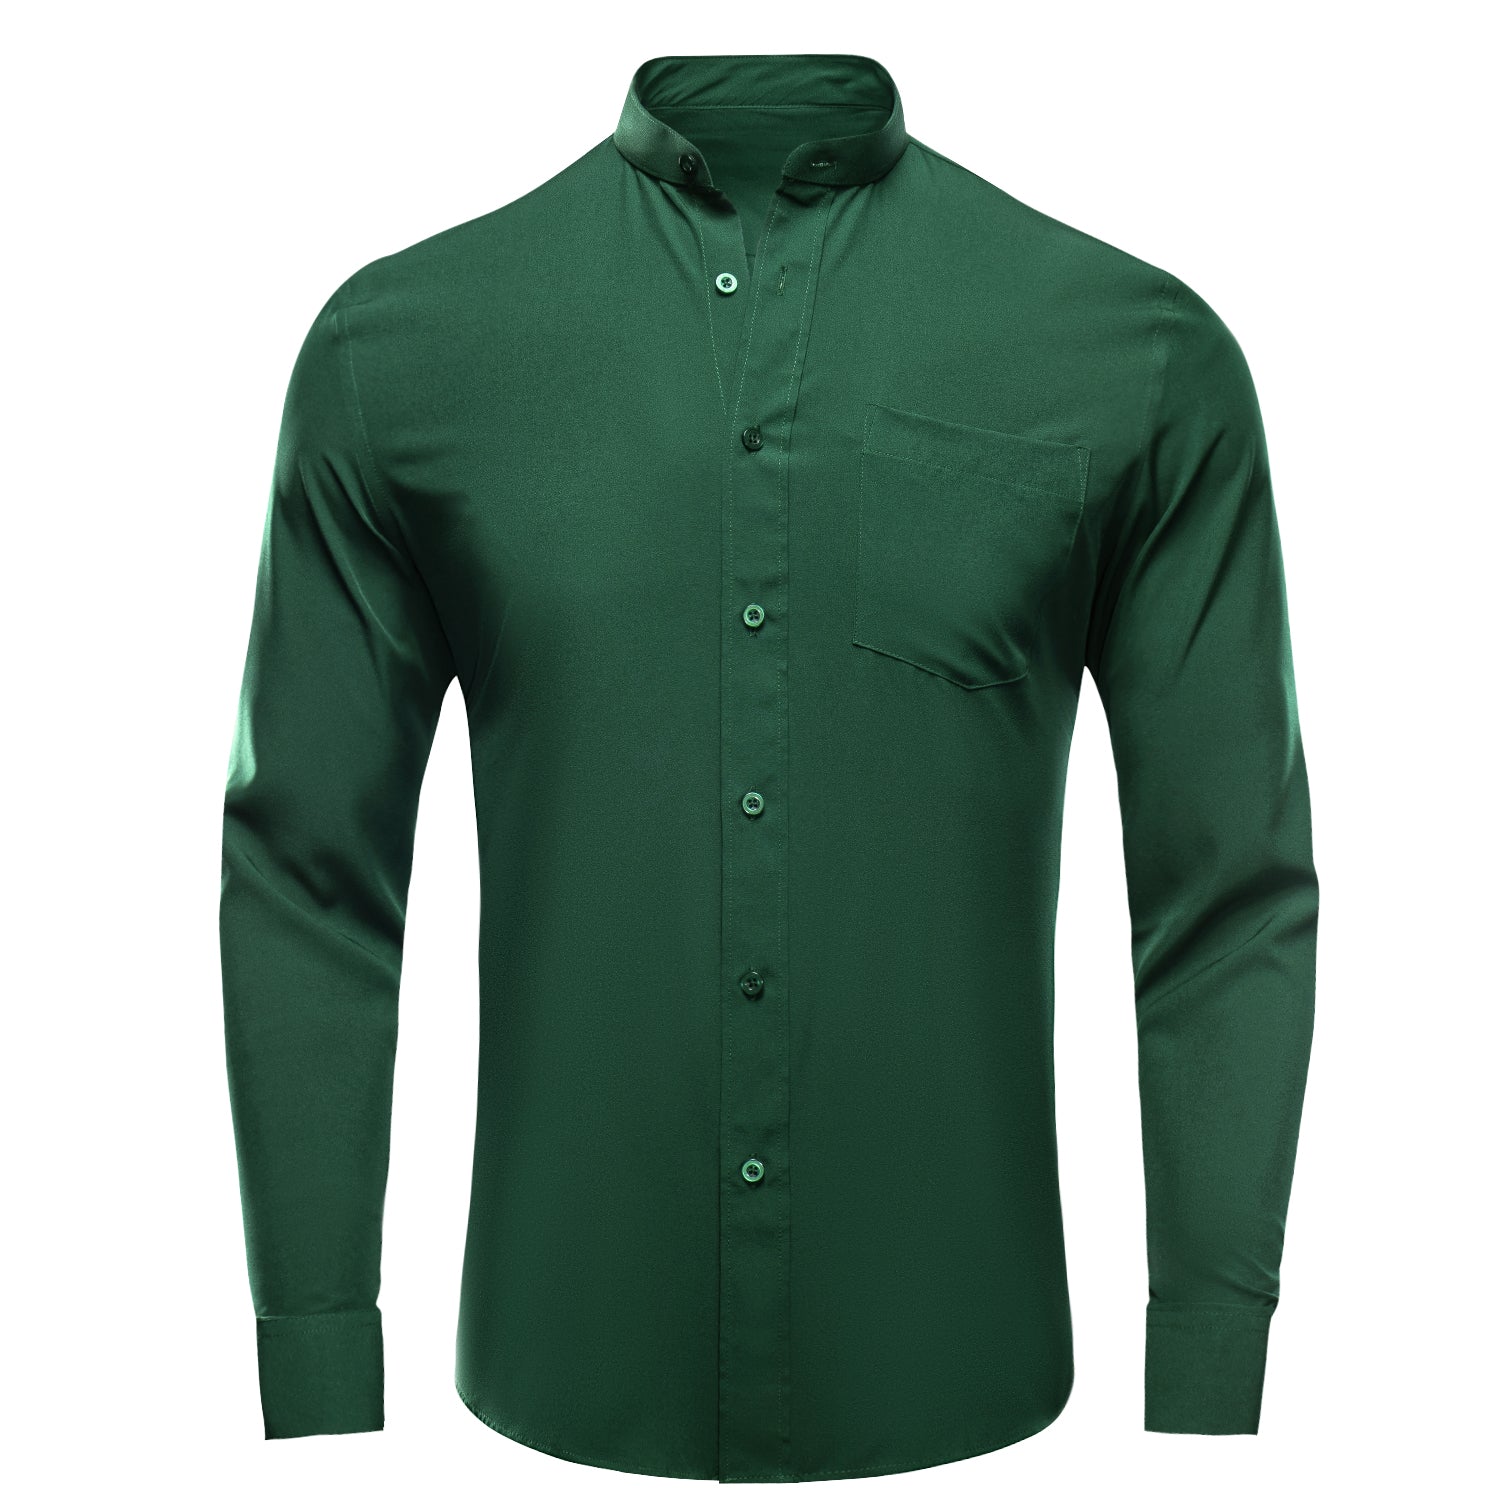 Emerald Green Solid Men's Long Sleeve Dress Shirt